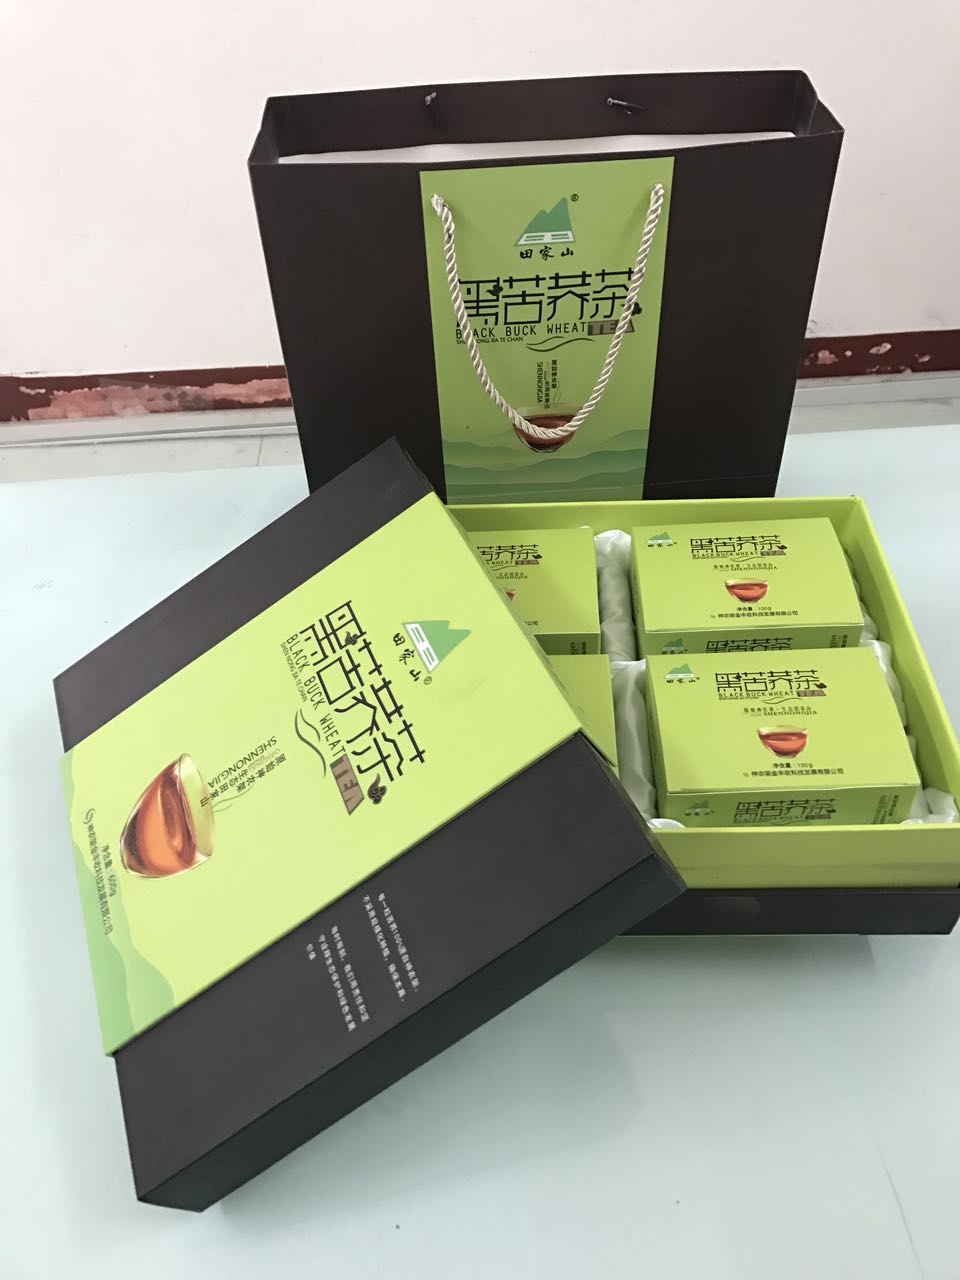 襄阳包装盒分享中国茶叶区域公共品牌白皮书